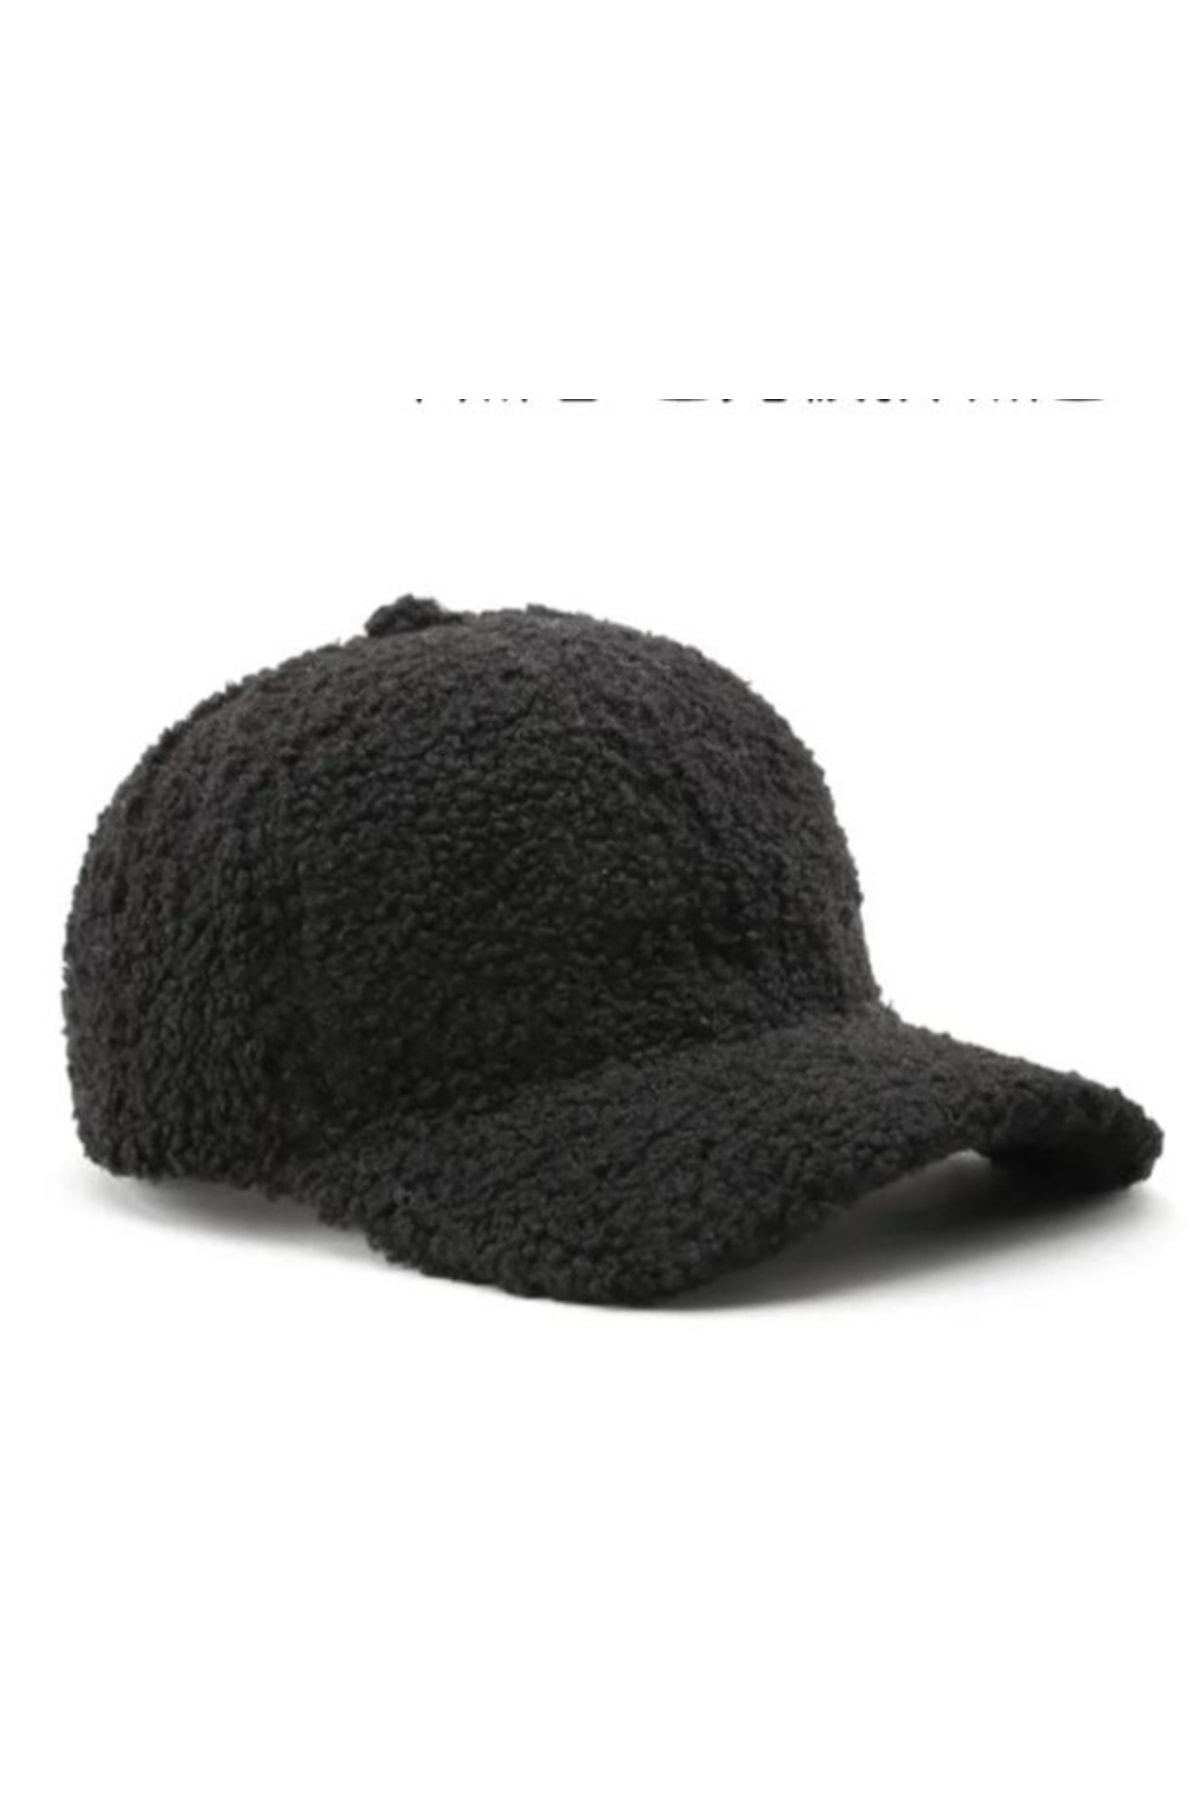 joker Kadın Kışlık Şapka Kep Peluş Ponpon Teddy Siyah